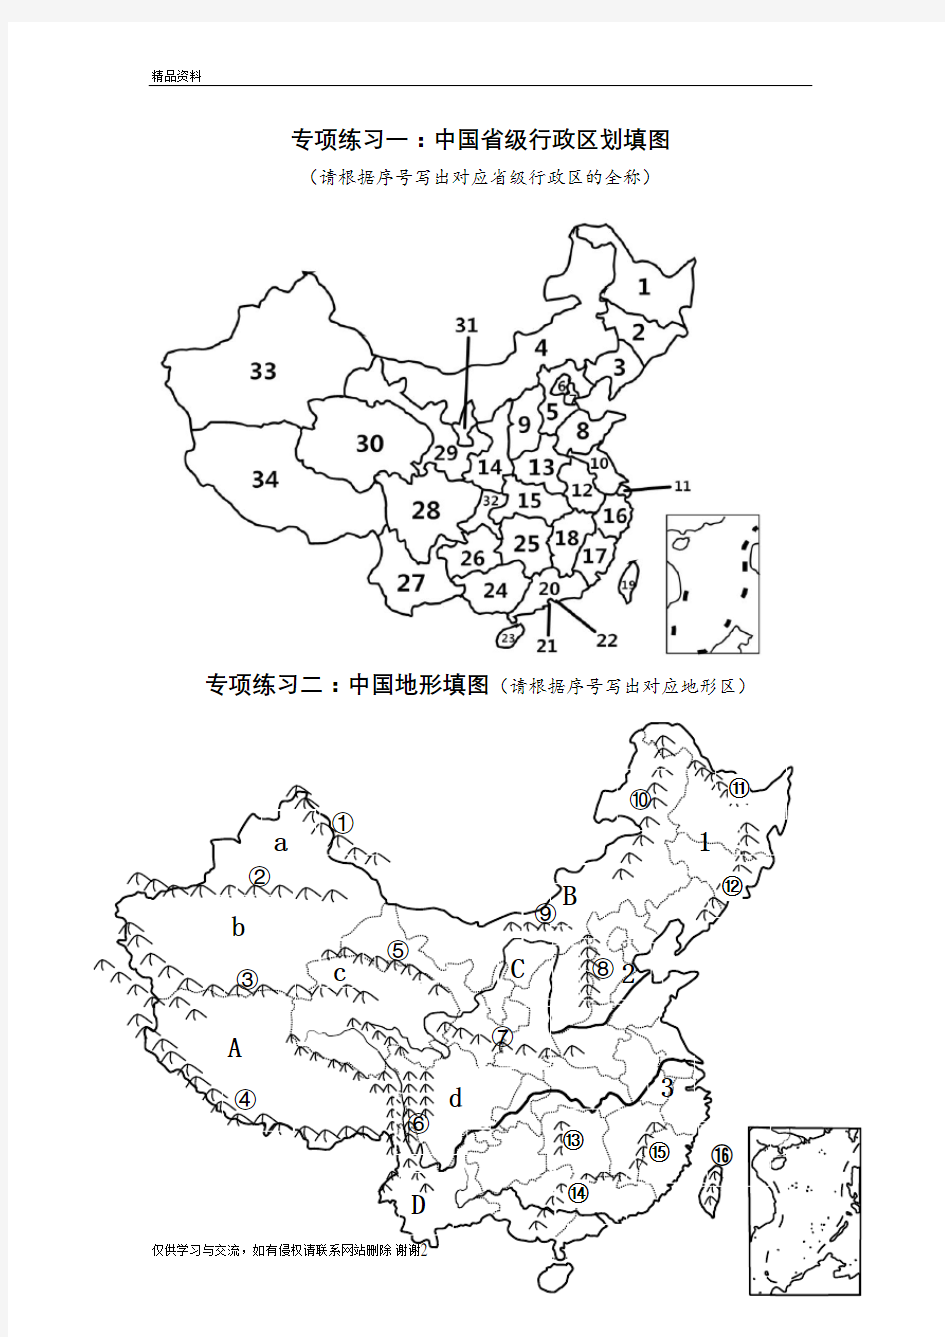 中国行政区划图地形图填图、省级行政区练习教学文稿